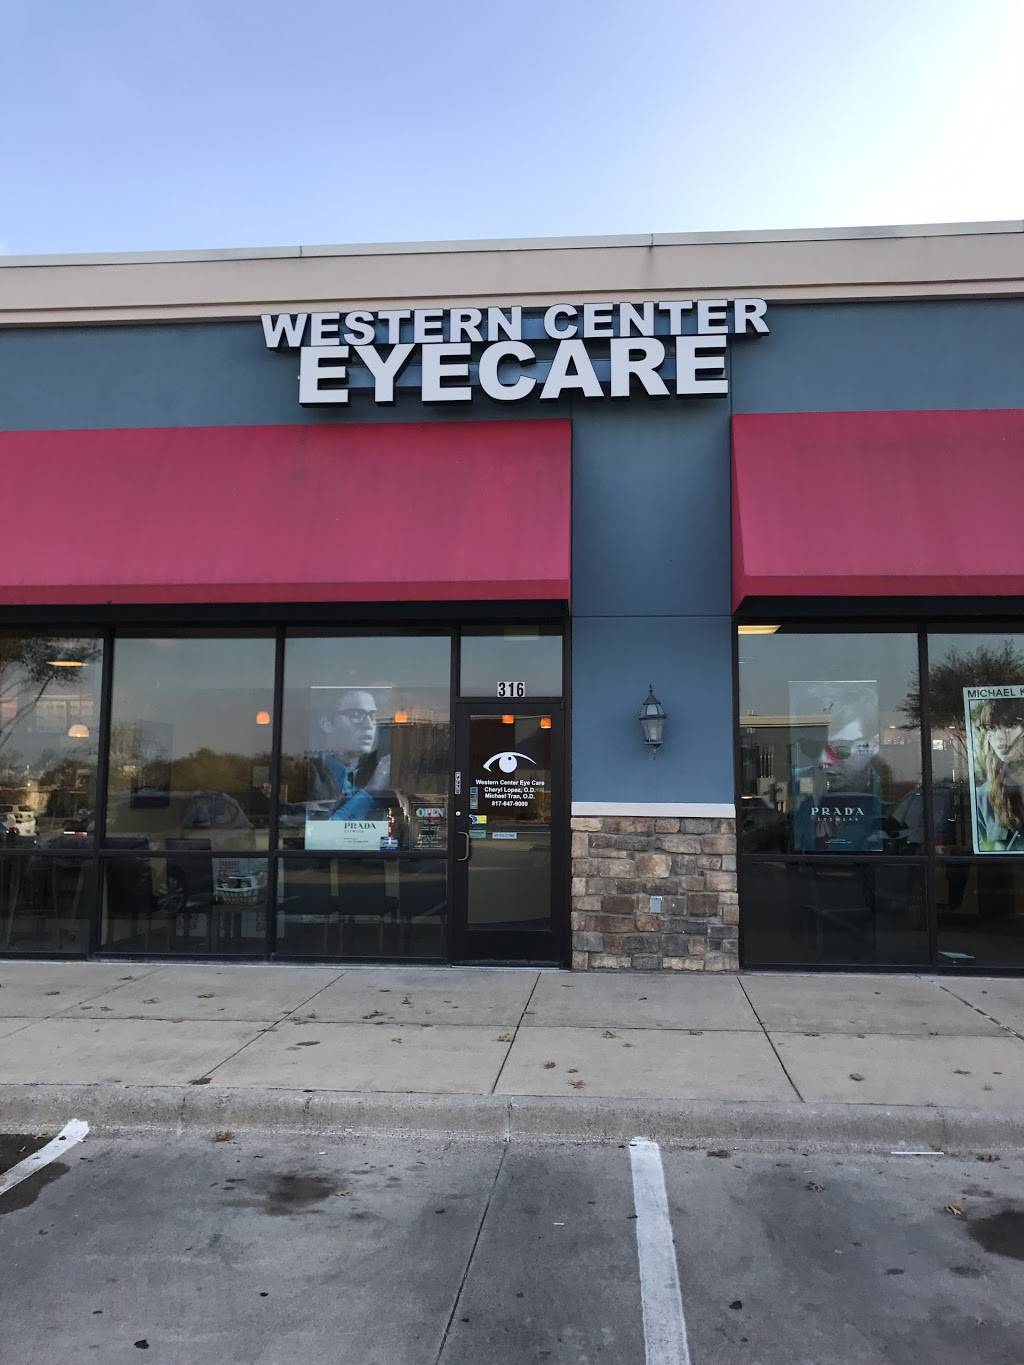 Western Center Eyecare | 2720 Western Center Blvd #316, Fort Worth, TX 76131 | Phone: (817) 847-9000